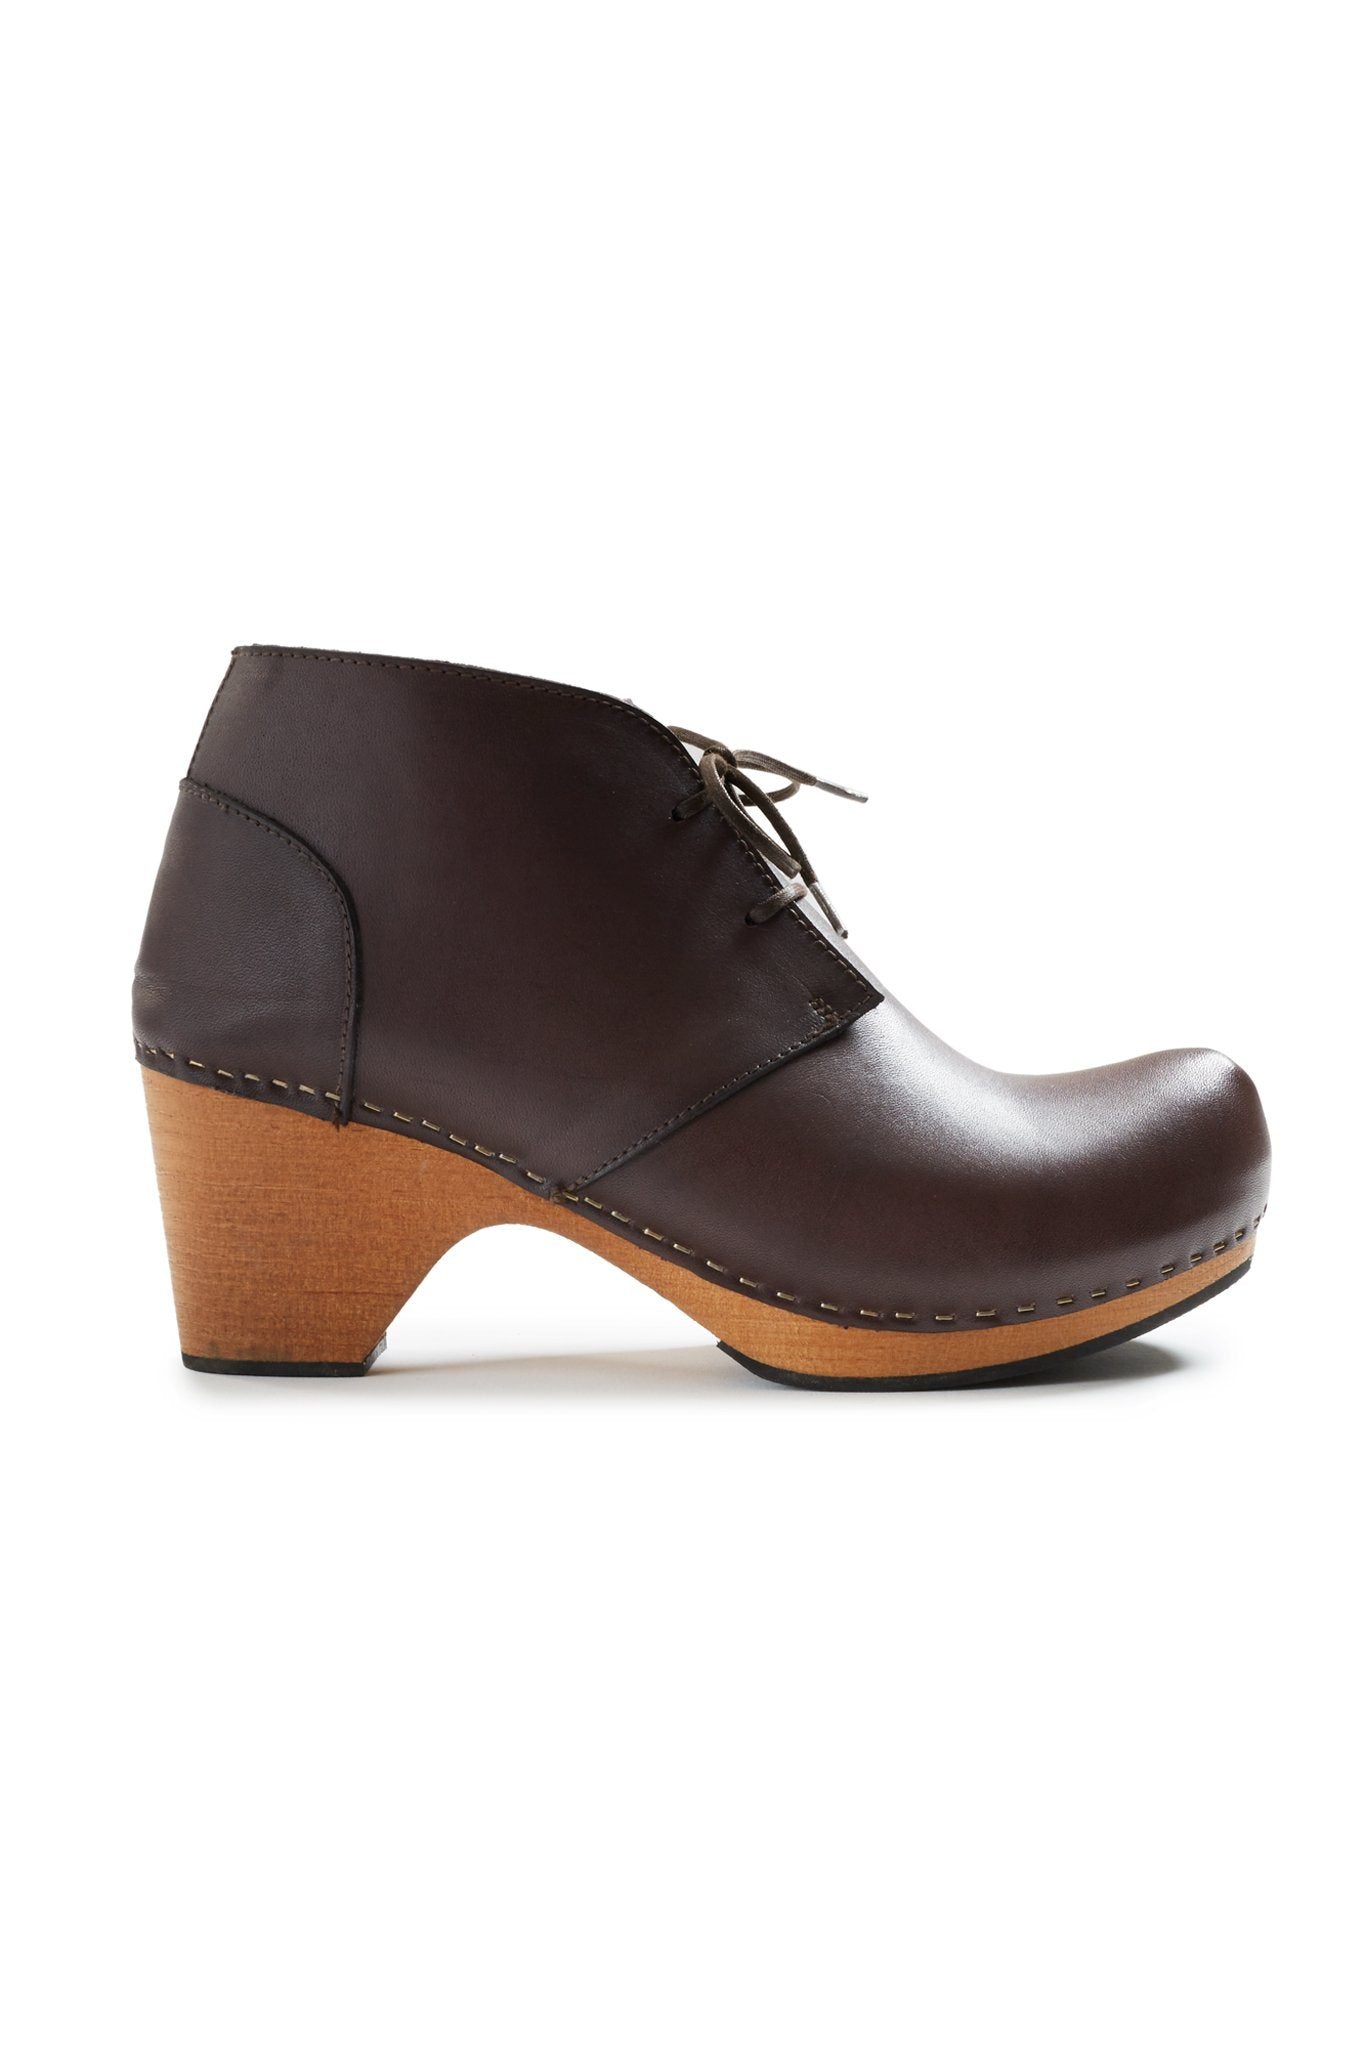 toe seam leather bootie clogs in dark brown Clogs lisa b. dark brown 36 (US 5.5-6) 